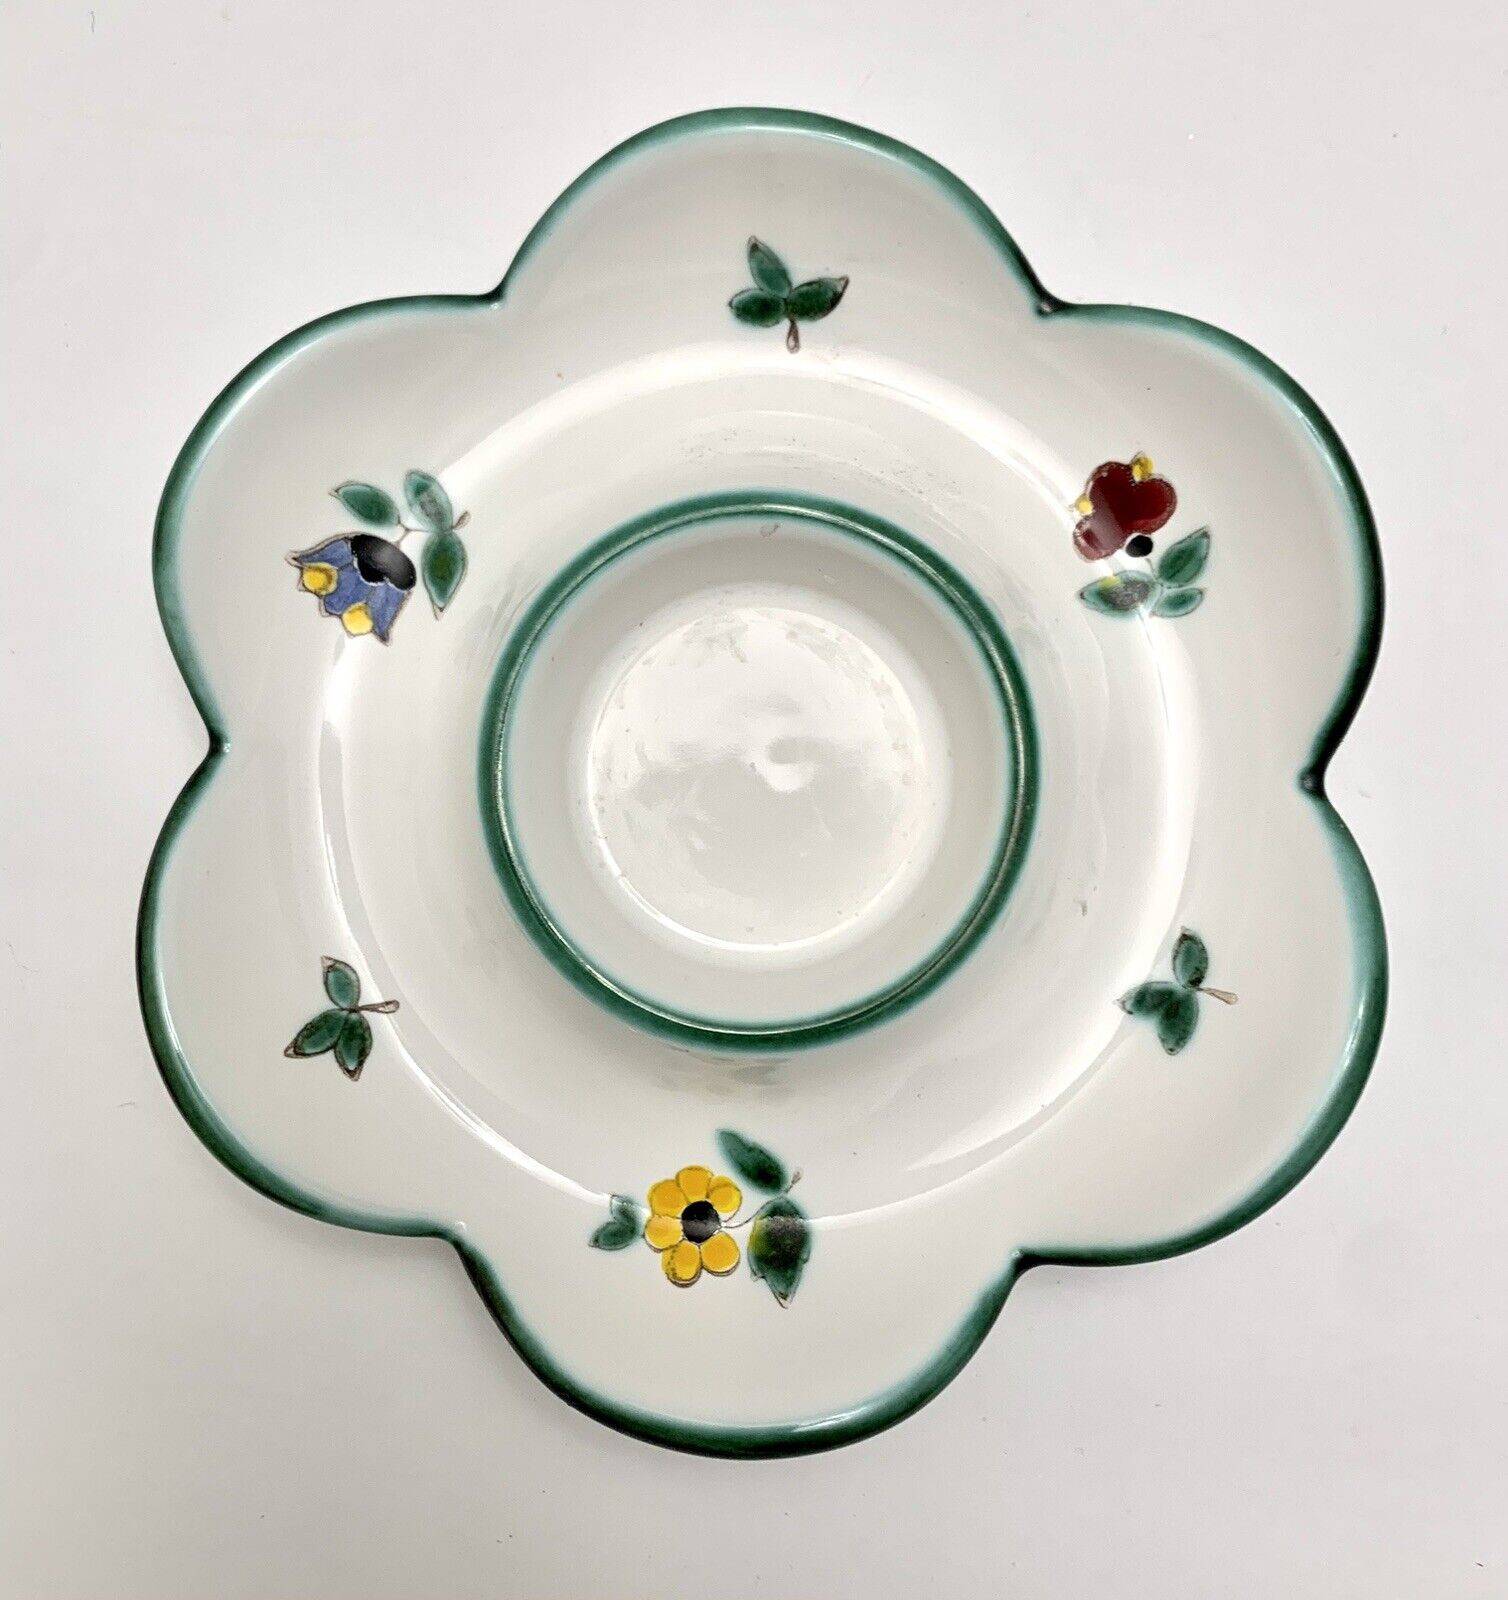 VTG Gmundner Keramik Austria Tealight Holders? Egg Plate? Alpine Flowers Ceramic